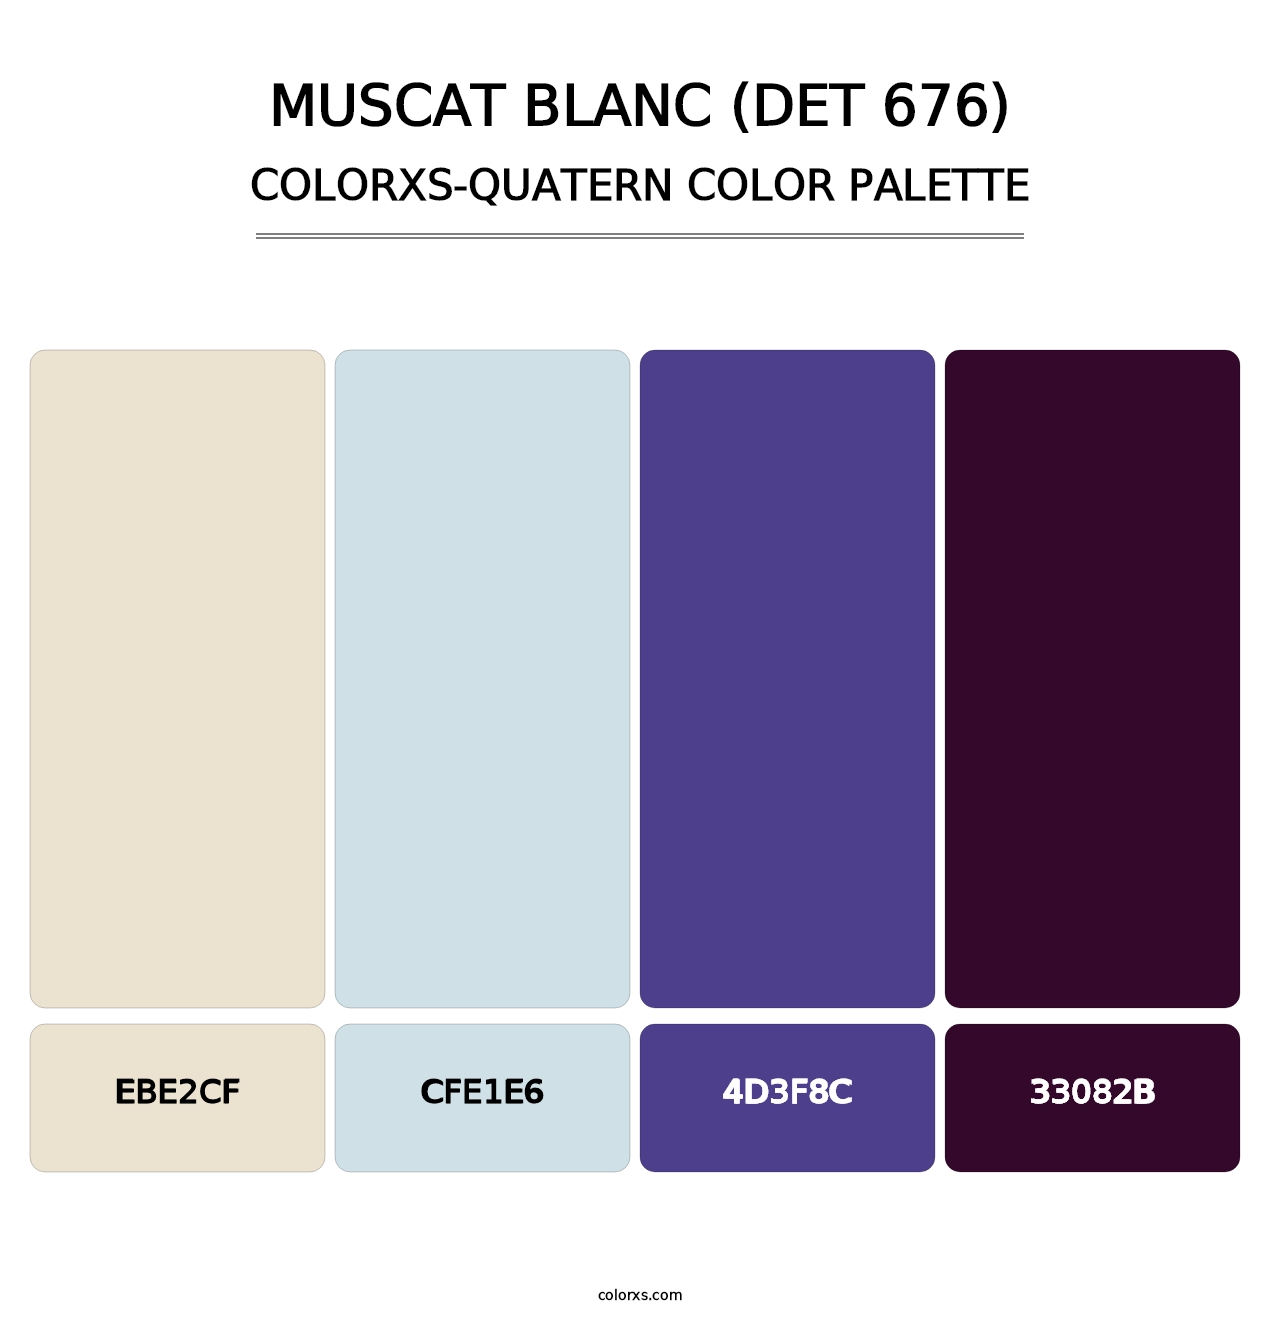 Muscat Blanc (DET 676) - Colorxs Quatern Palette